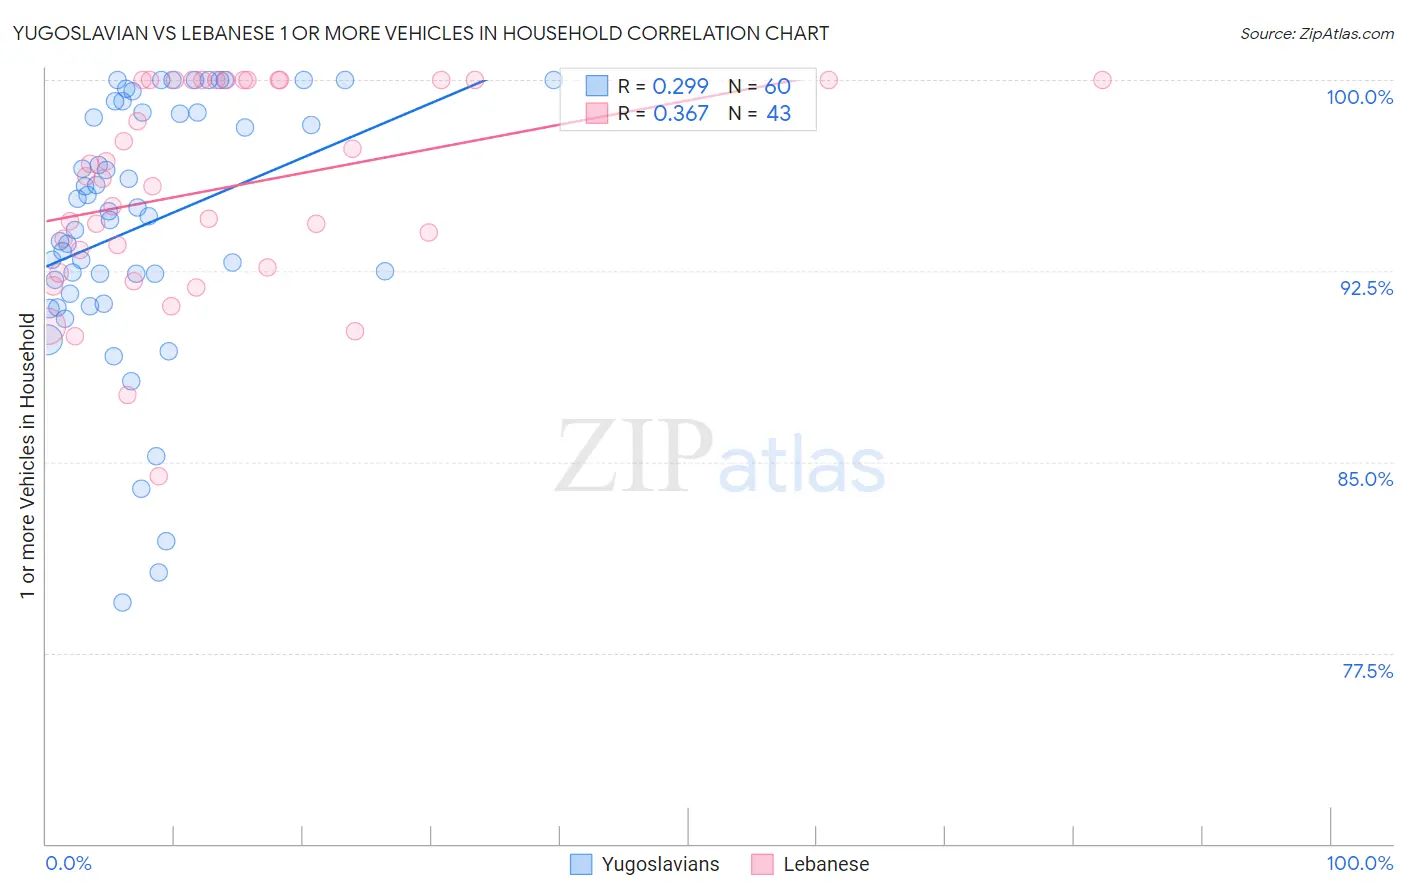 Yugoslavian vs Lebanese 1 or more Vehicles in Household